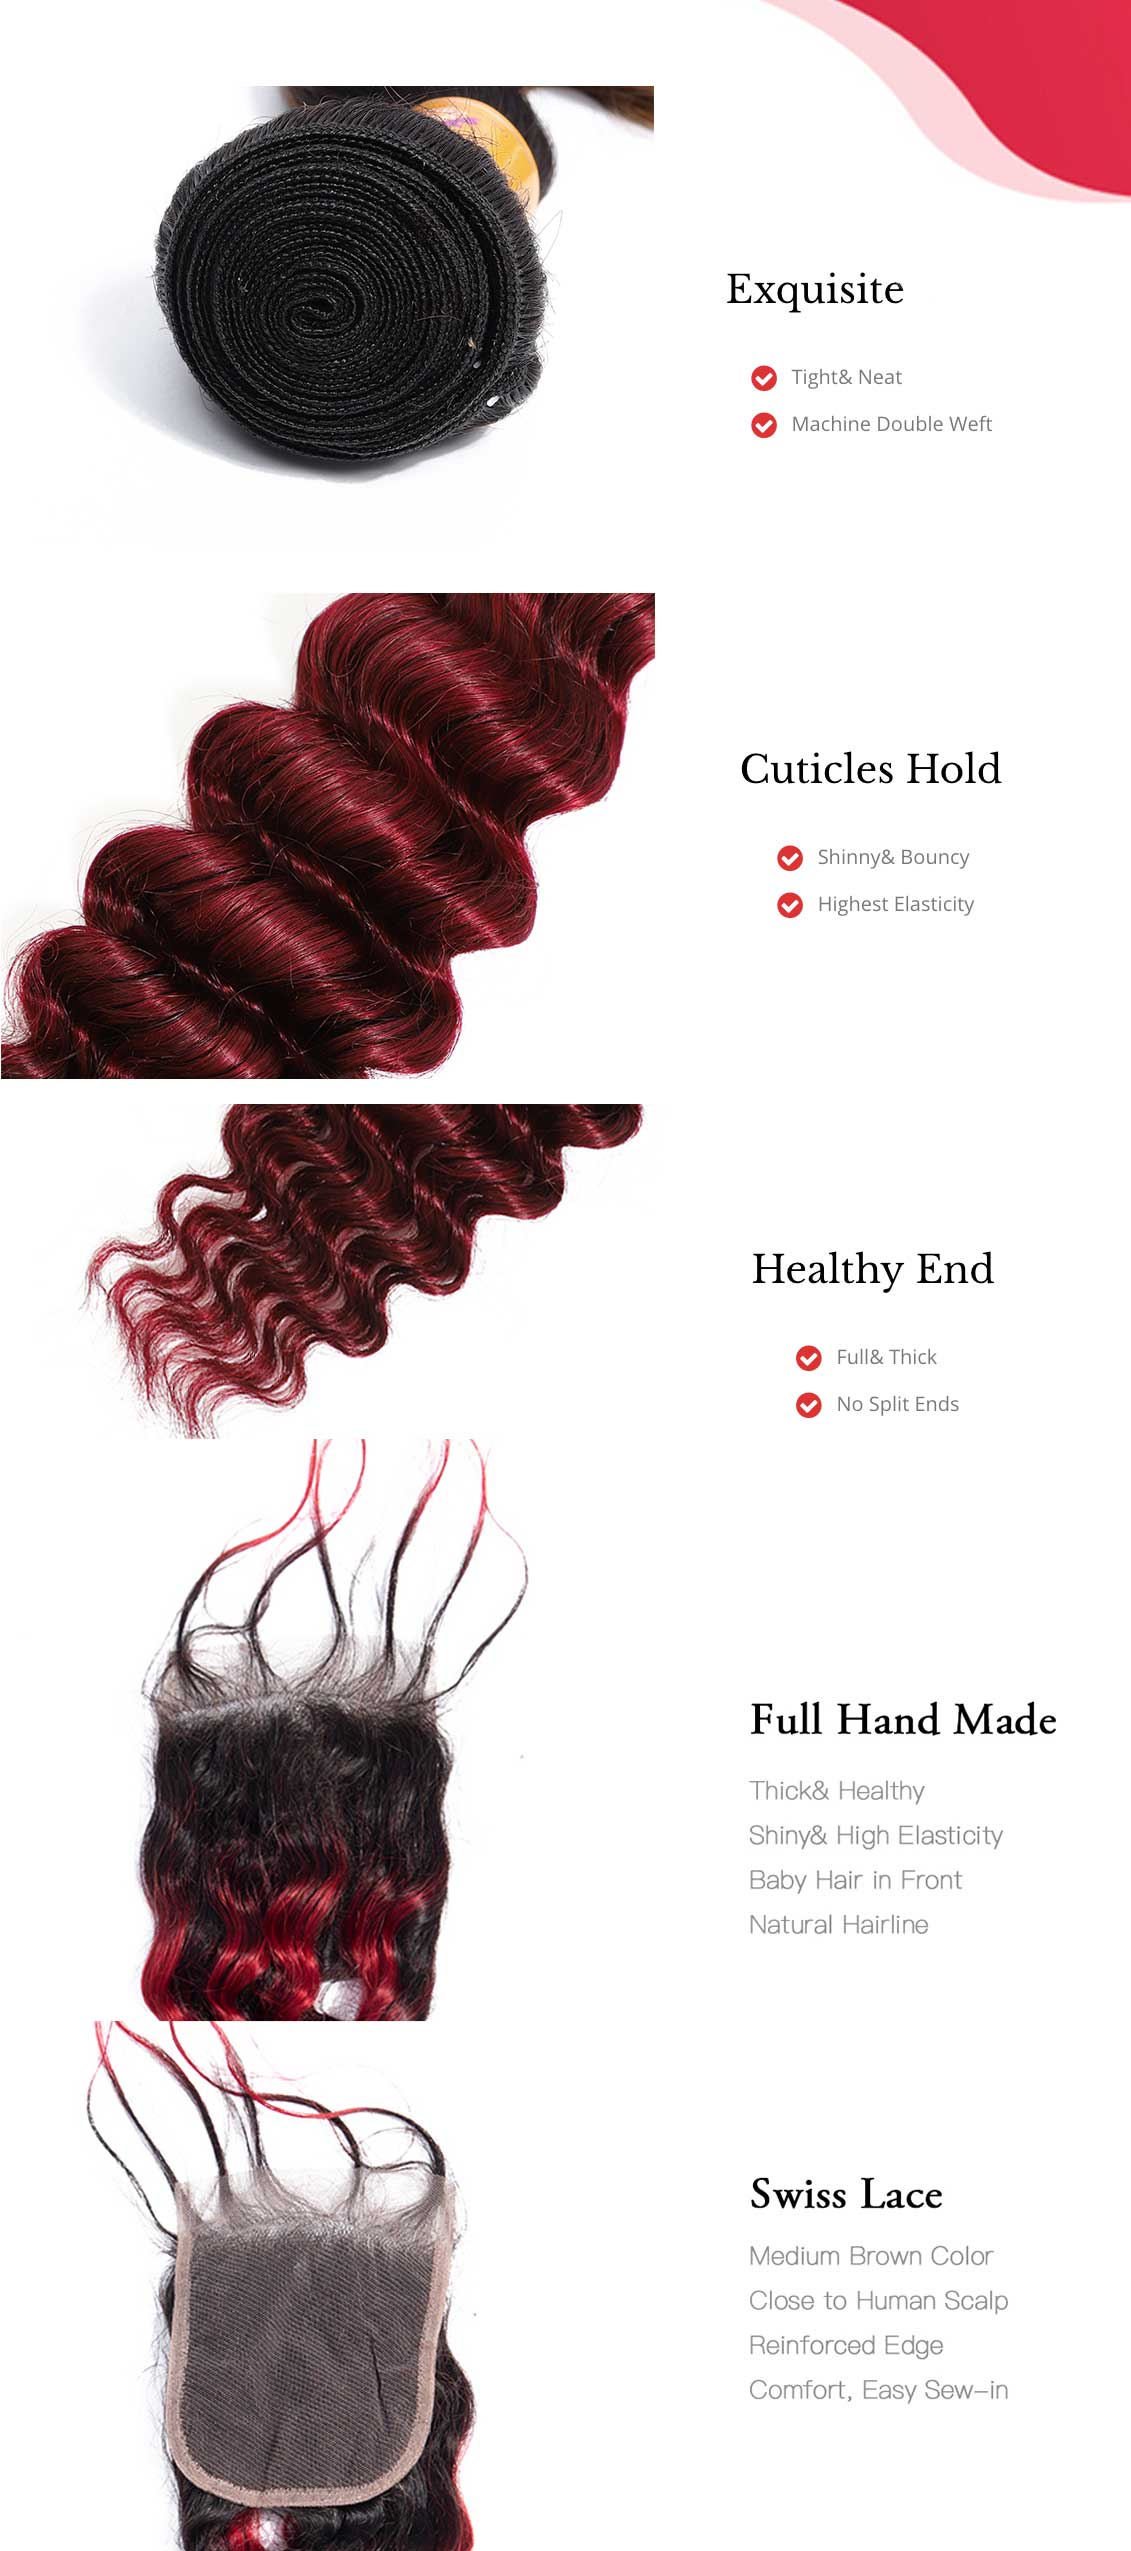 MarchQueen Peruvian Virgin Hair Ombre Hair 1b/bug Deep Wave Hair 4 Bundles With Lace Closure